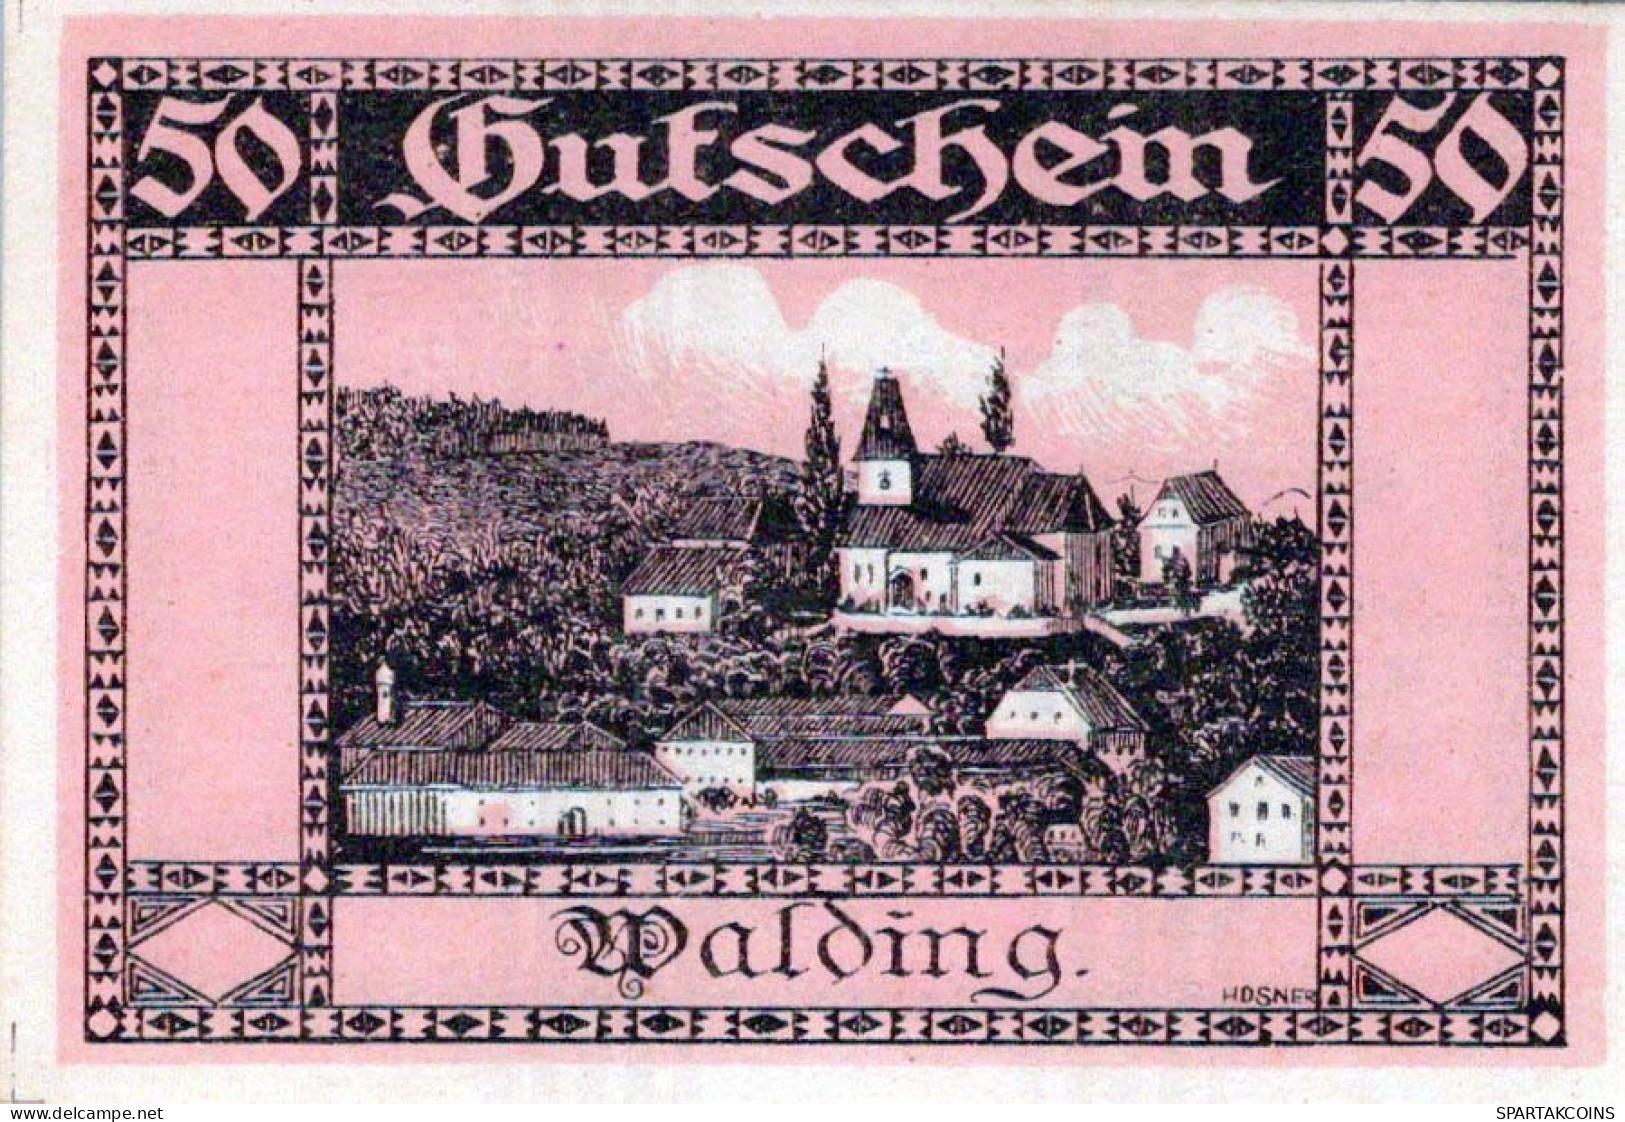 50 HELLER 1920 Stadt WALDING Oberösterreich Österreich UNC Österreich Notgeld #PH549 - [11] Lokale Uitgaven